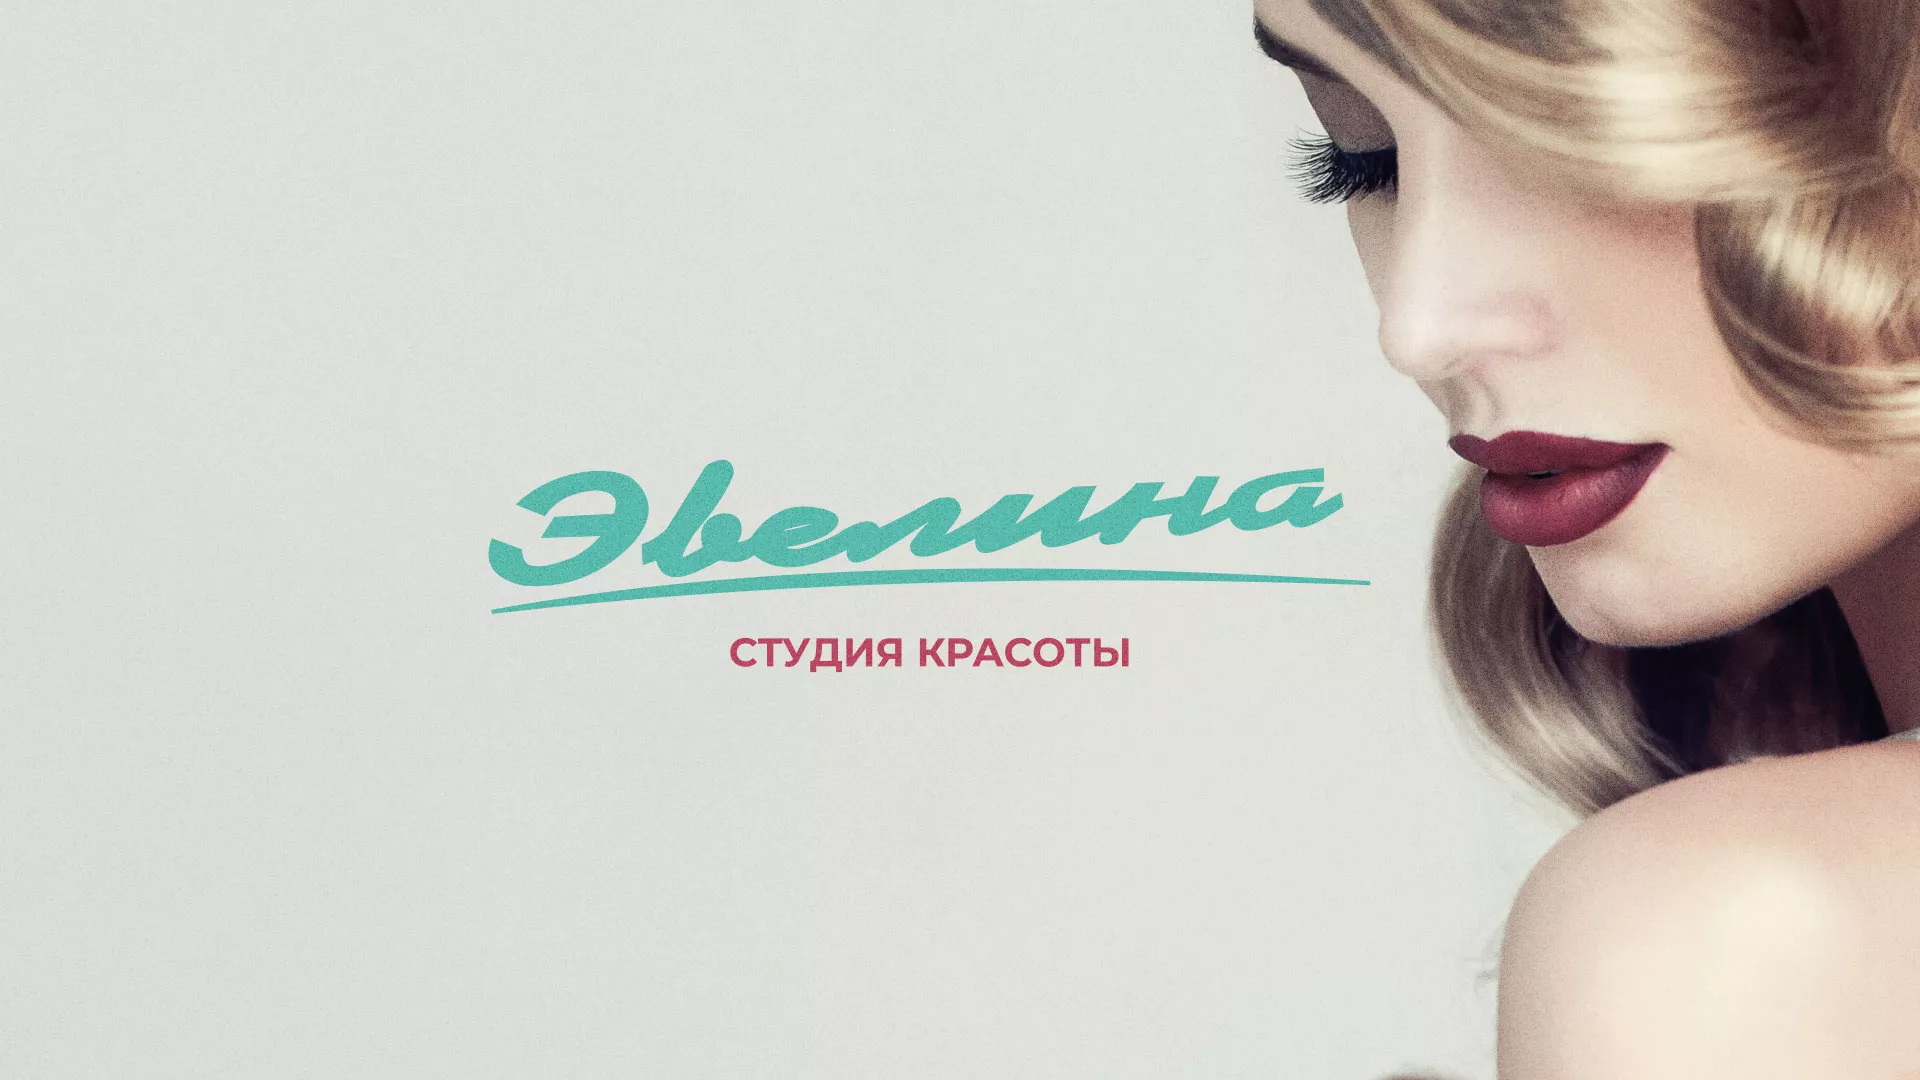 Разработка сайта для салона красоты «Эвелина» в Иркутске